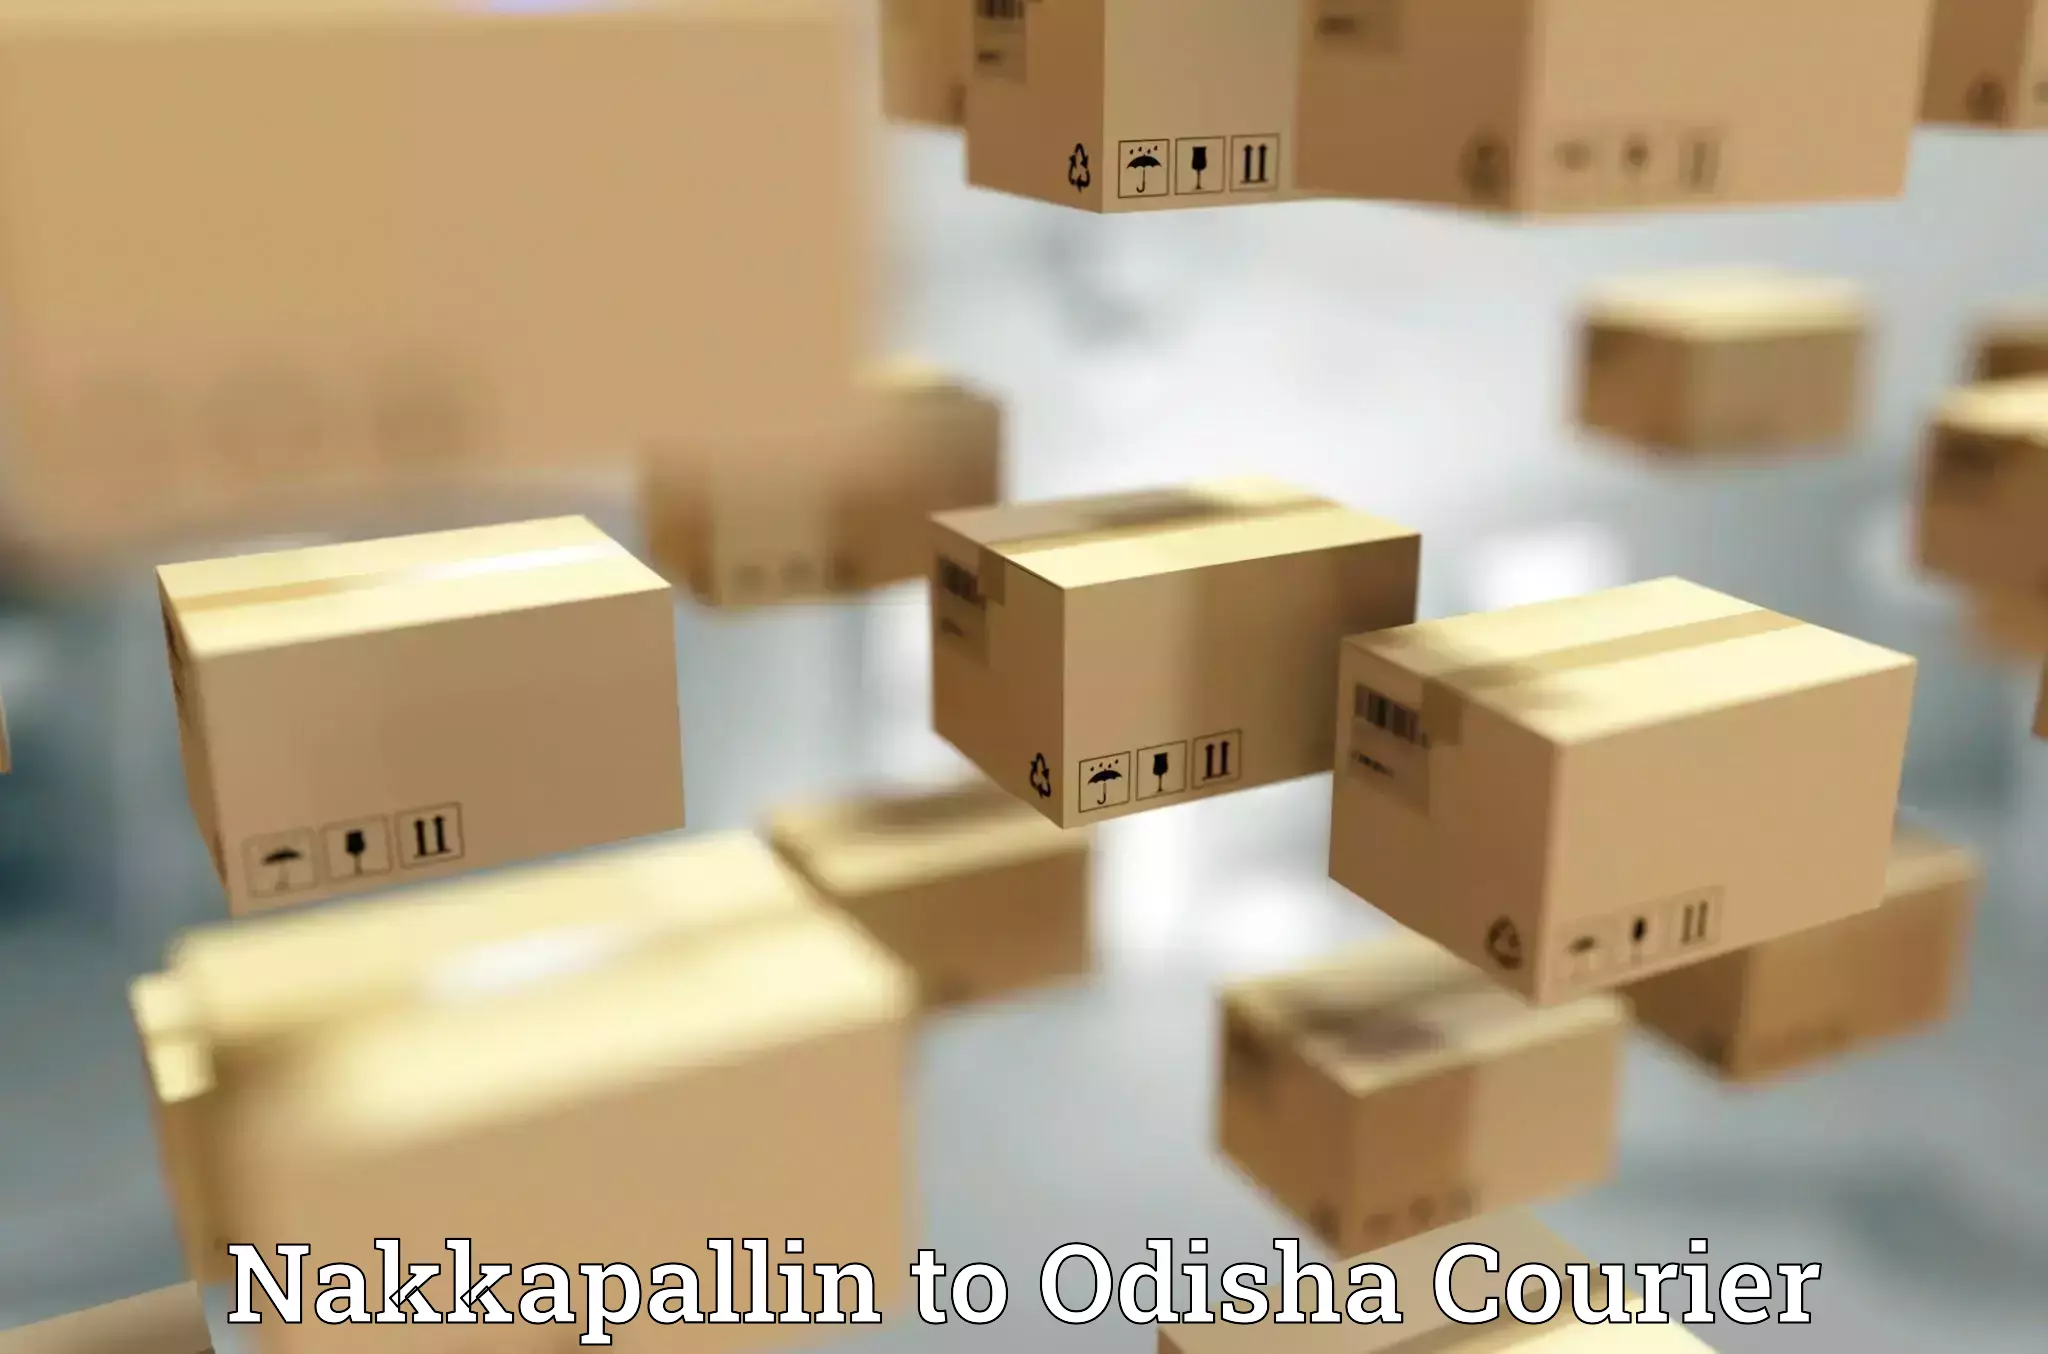 User-friendly courier app Nakkapallin to Chandinchowk